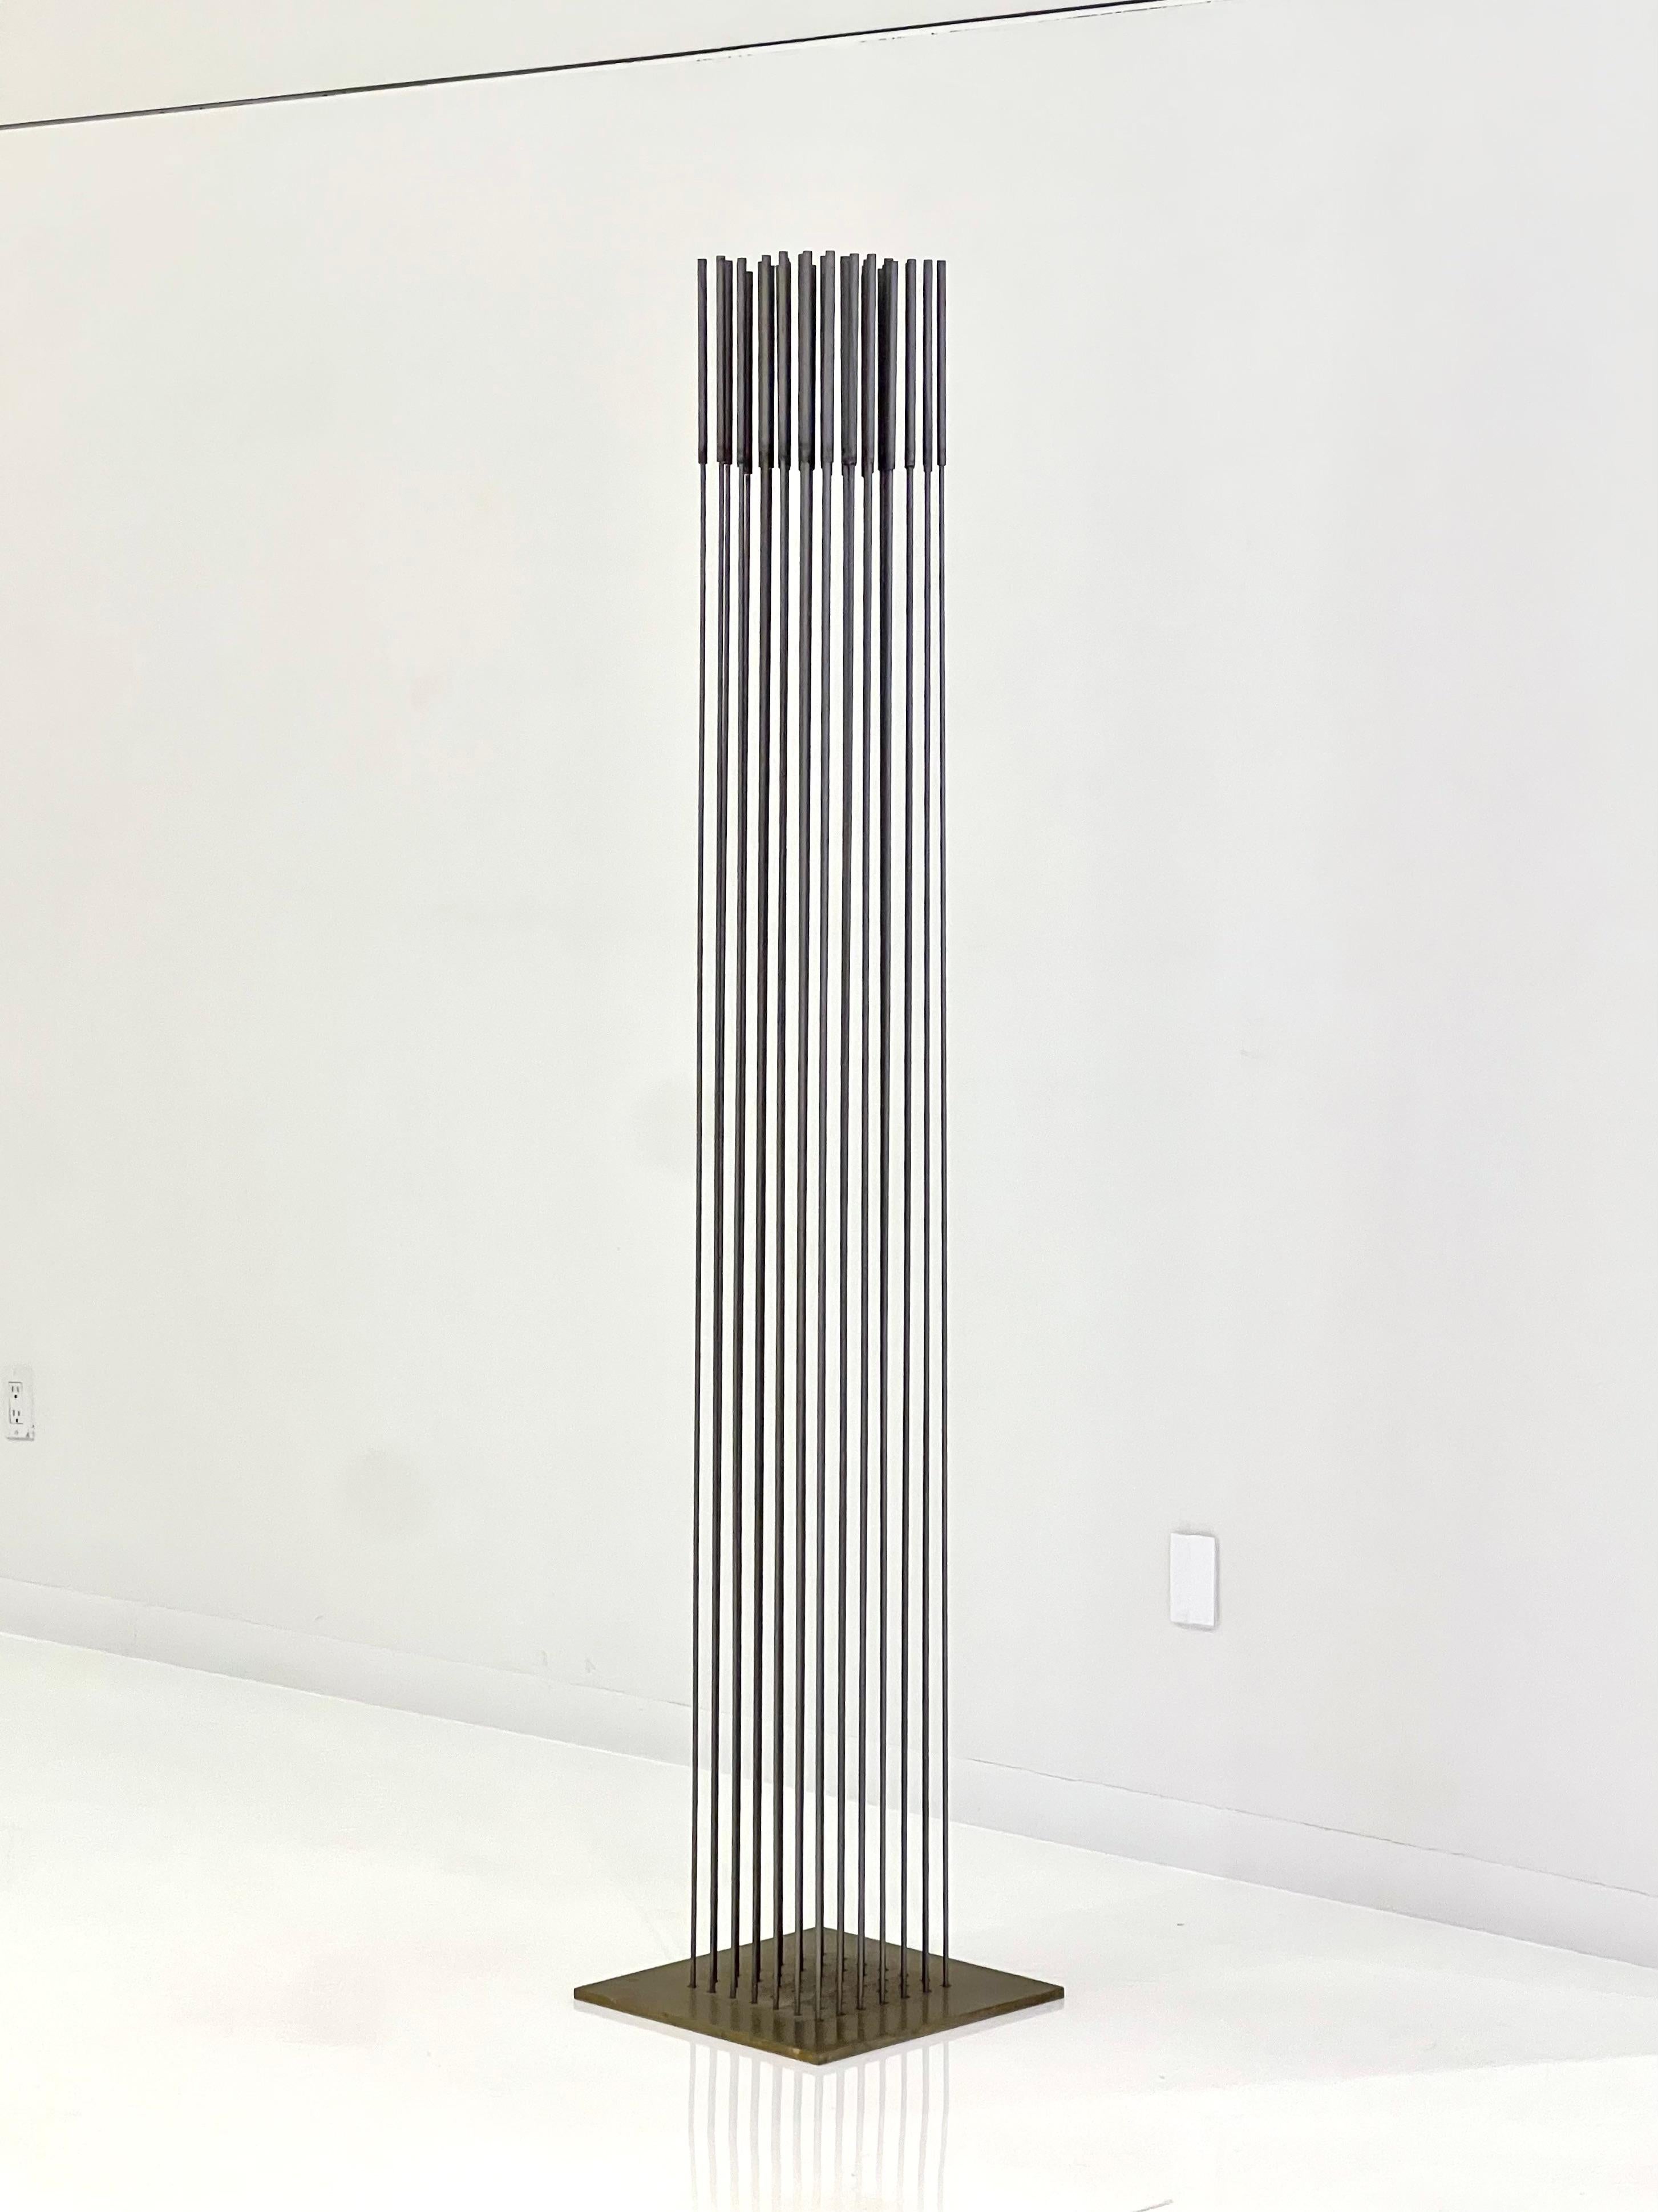 Harry Bertoia, Monumental Sonambient Sculpture, États-Unis, vers les années 1970.
Inconel sur plaque de laiton, composé de 49 tiges dans une disposition 7 x 7 avec des quenouilles, non marqué. Dimensions : H : 81, L : 16, P : 16 po.

Provenance